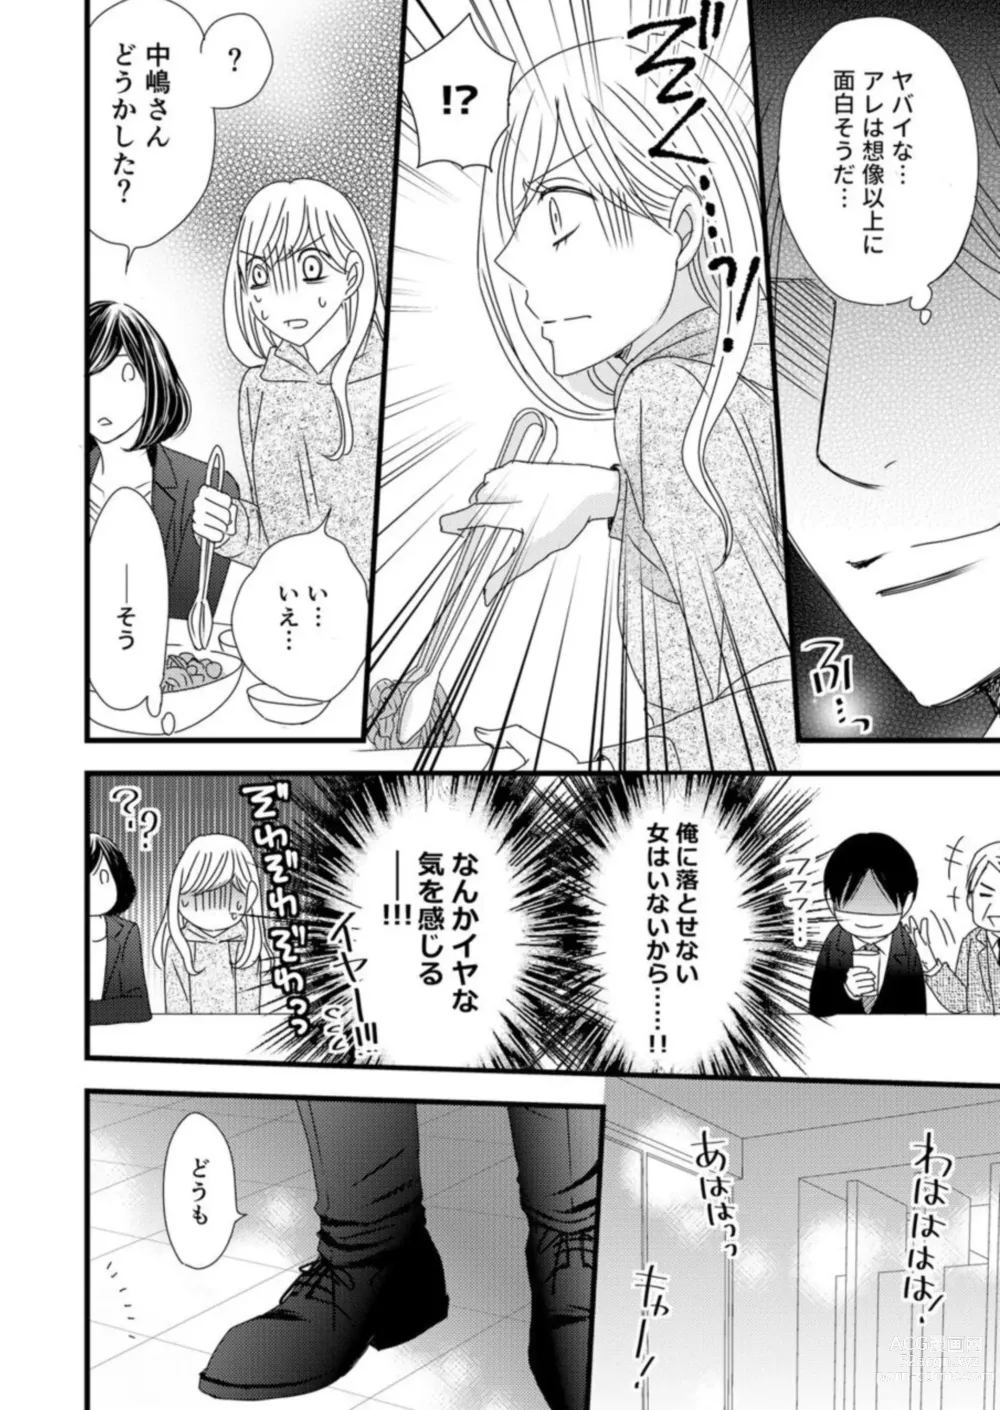 Page 22 of manga Takane no koi wa Mendokusai 1